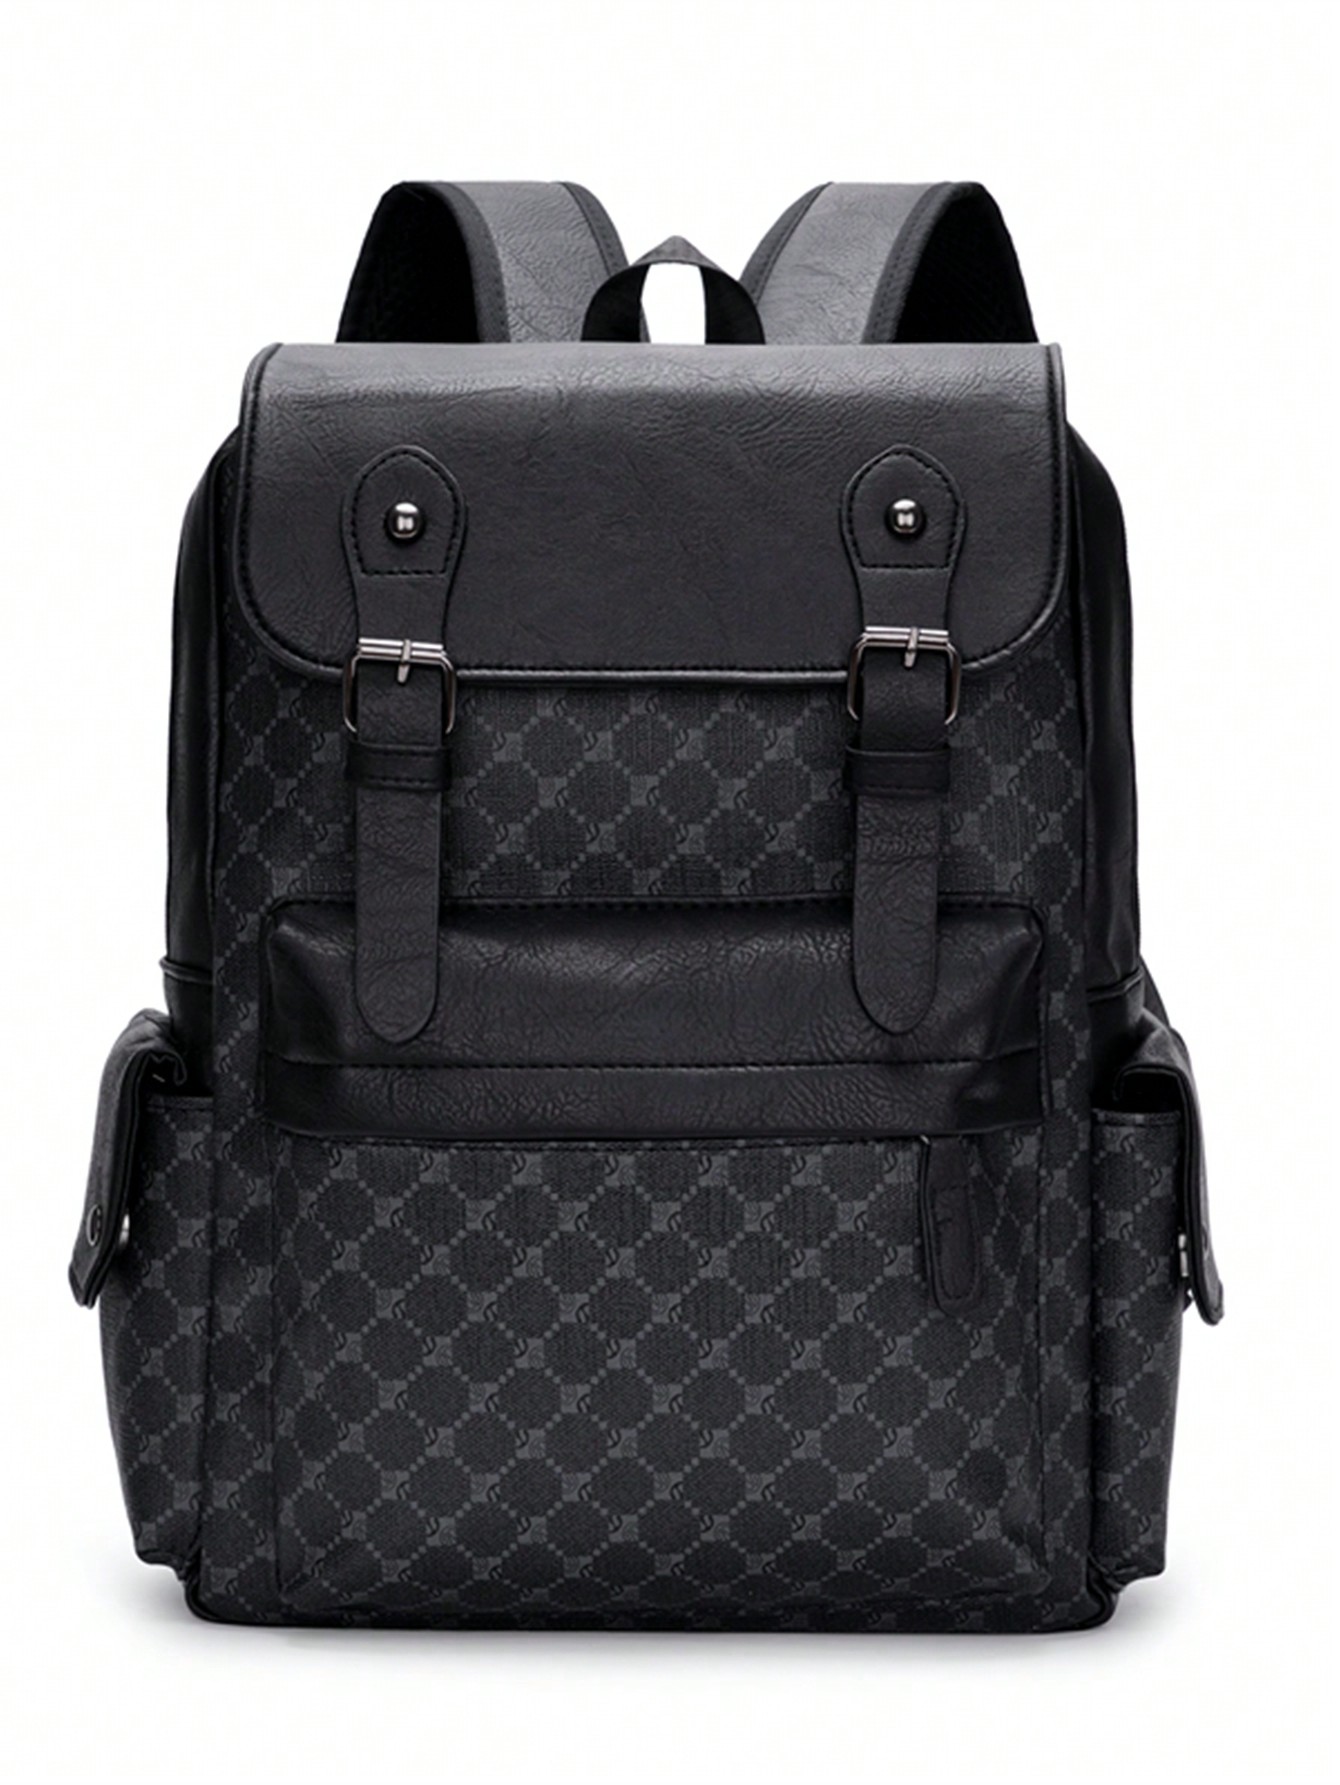 Мужской модный повседневный рюкзак в клетку большой вместимости для бизнеса и путешествий, черный